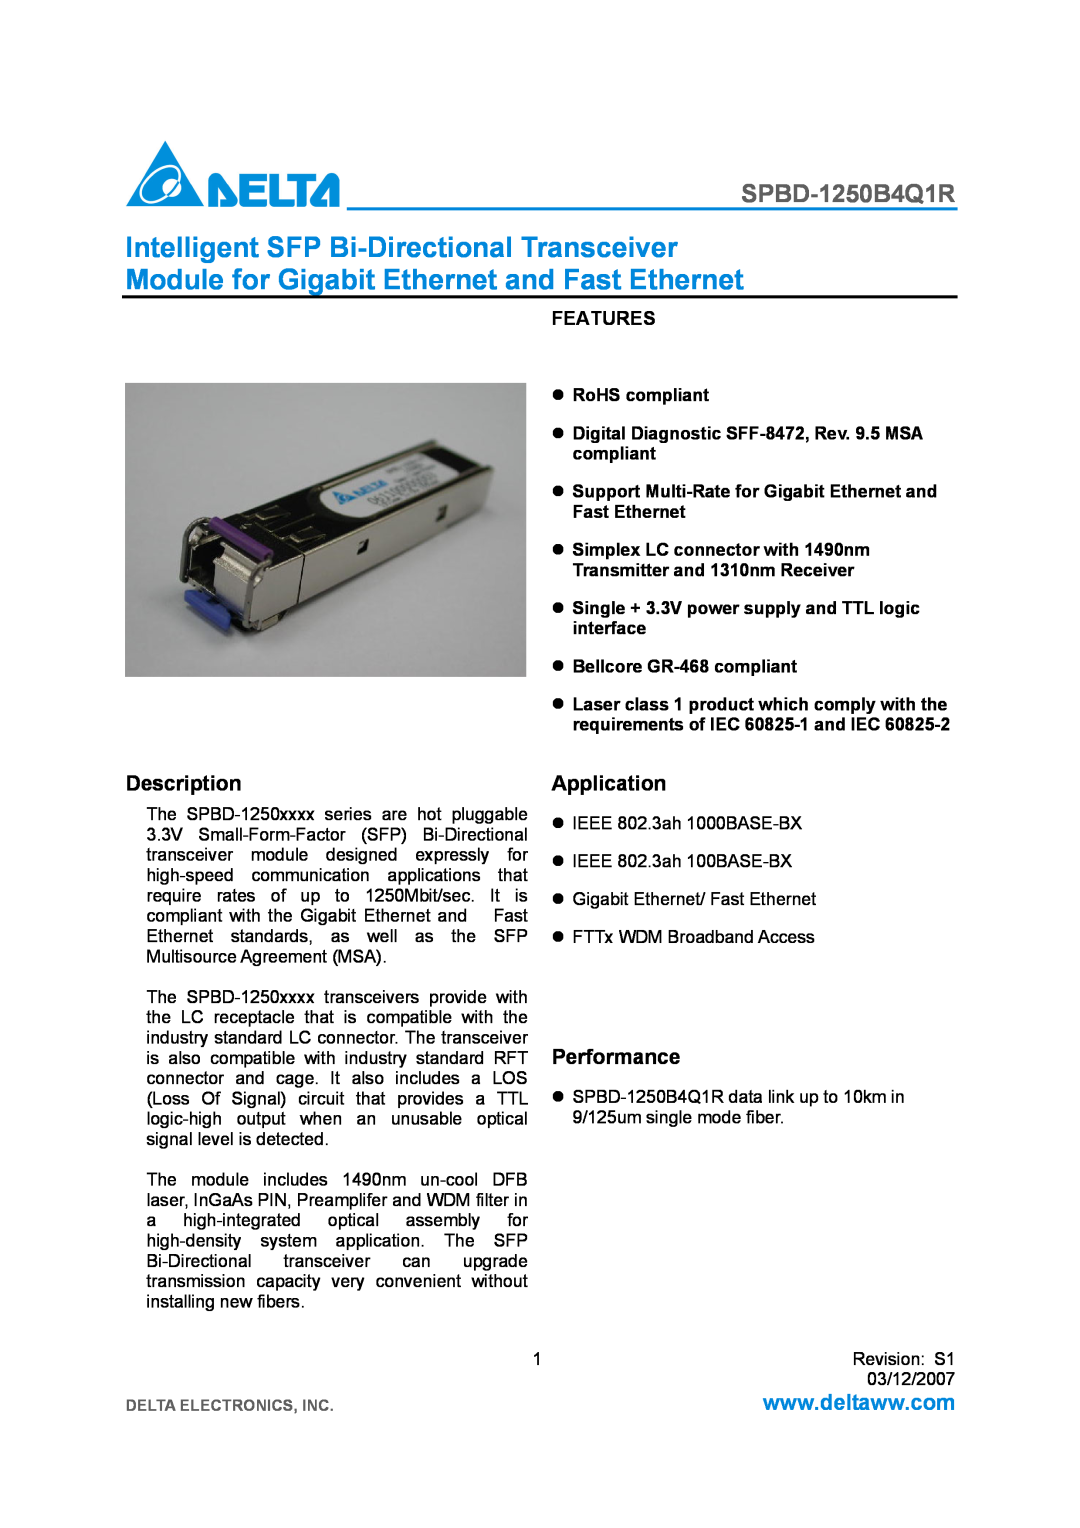 Delta Electronics SPBD-1250B4Q1R manual Description, Application, Performance, Bellcore GR-468 compliant, Features 